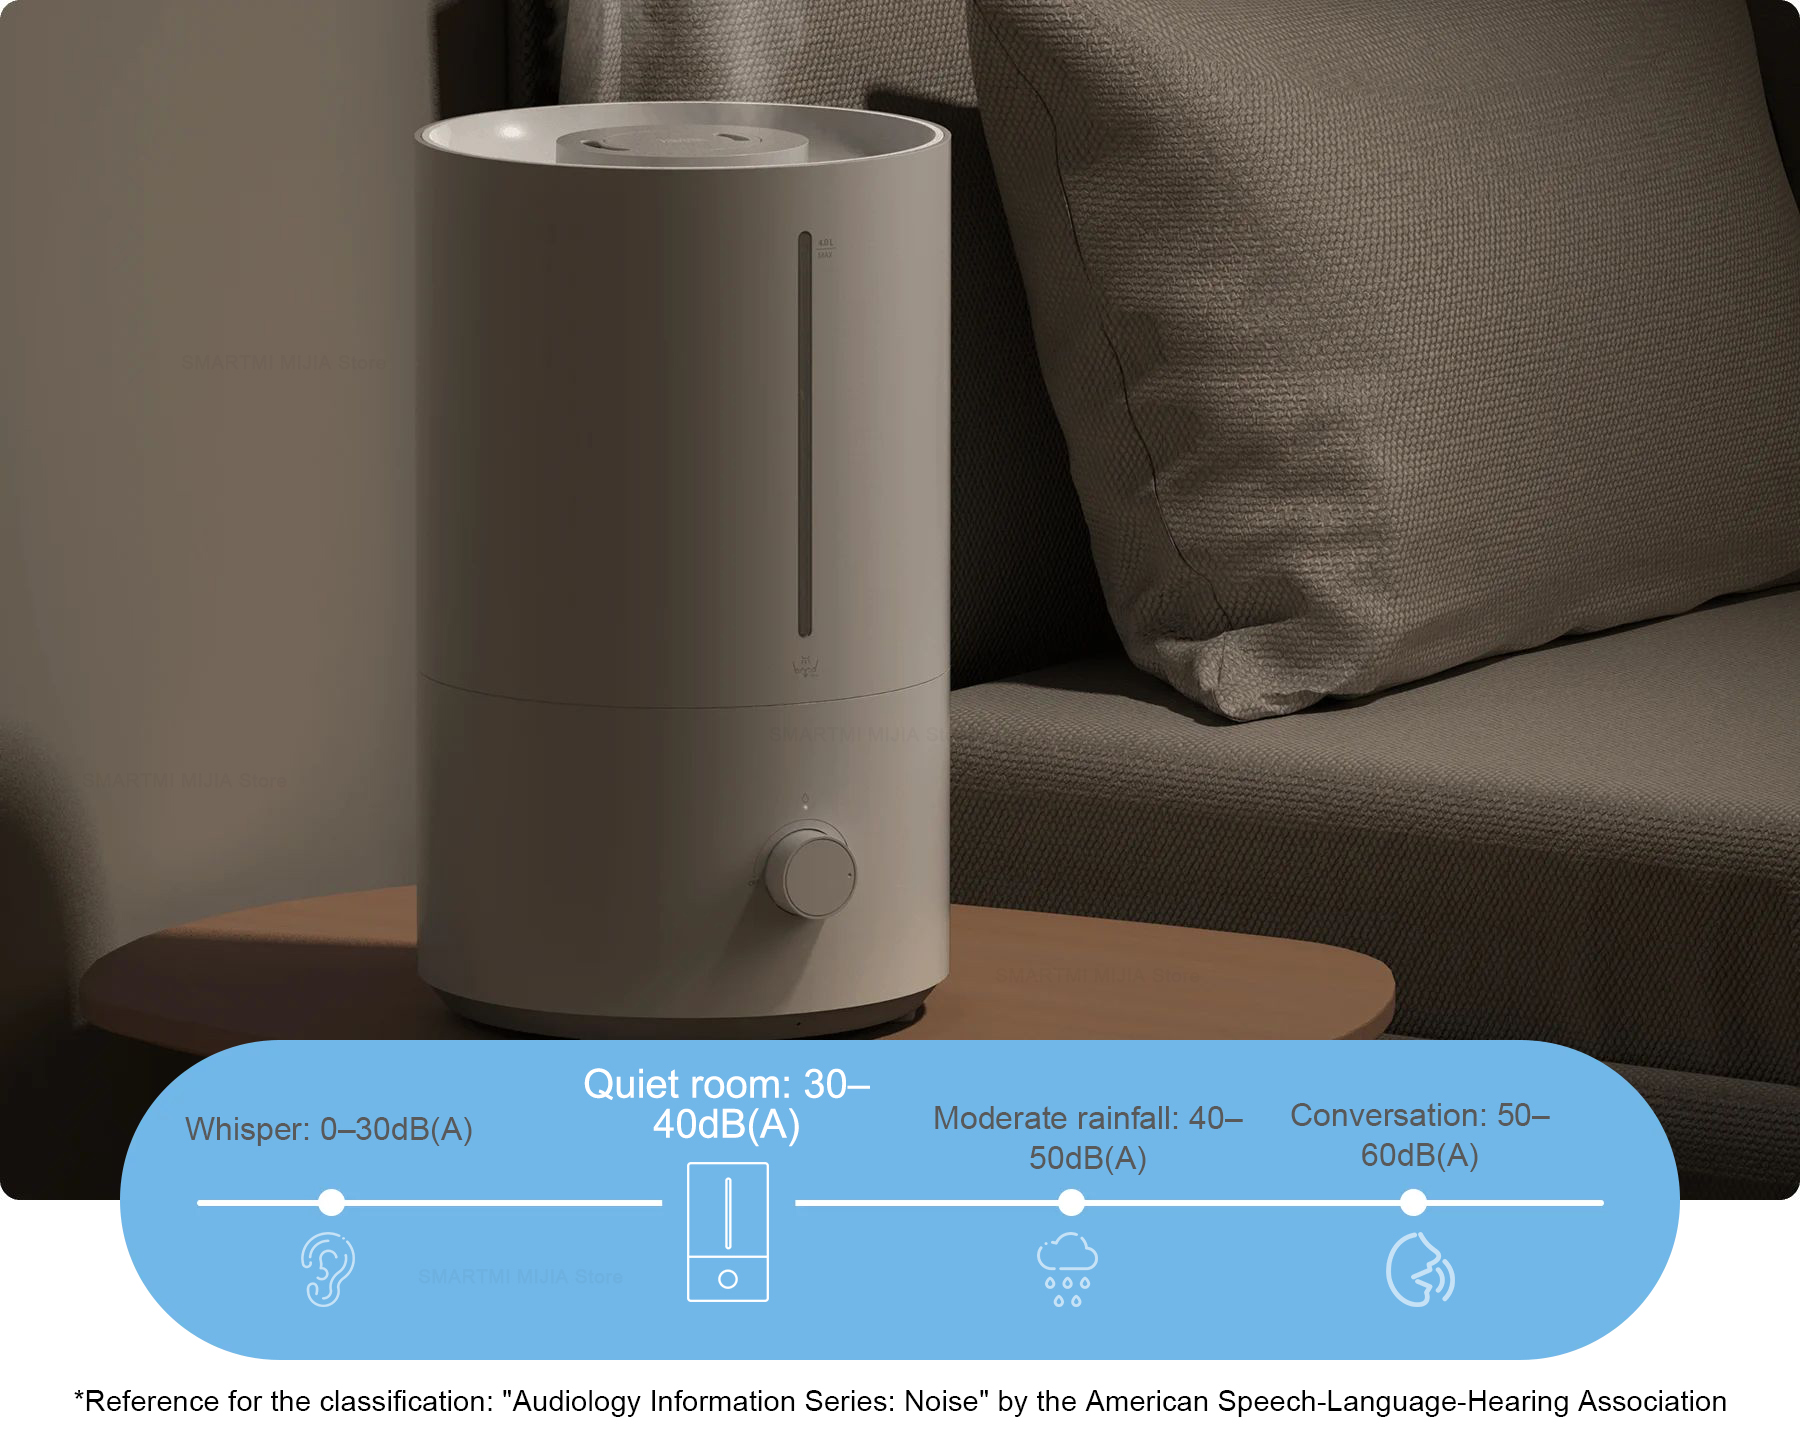 XIAOMI Humidifier 2 Lite acquisto online in modo economico e sicuro 